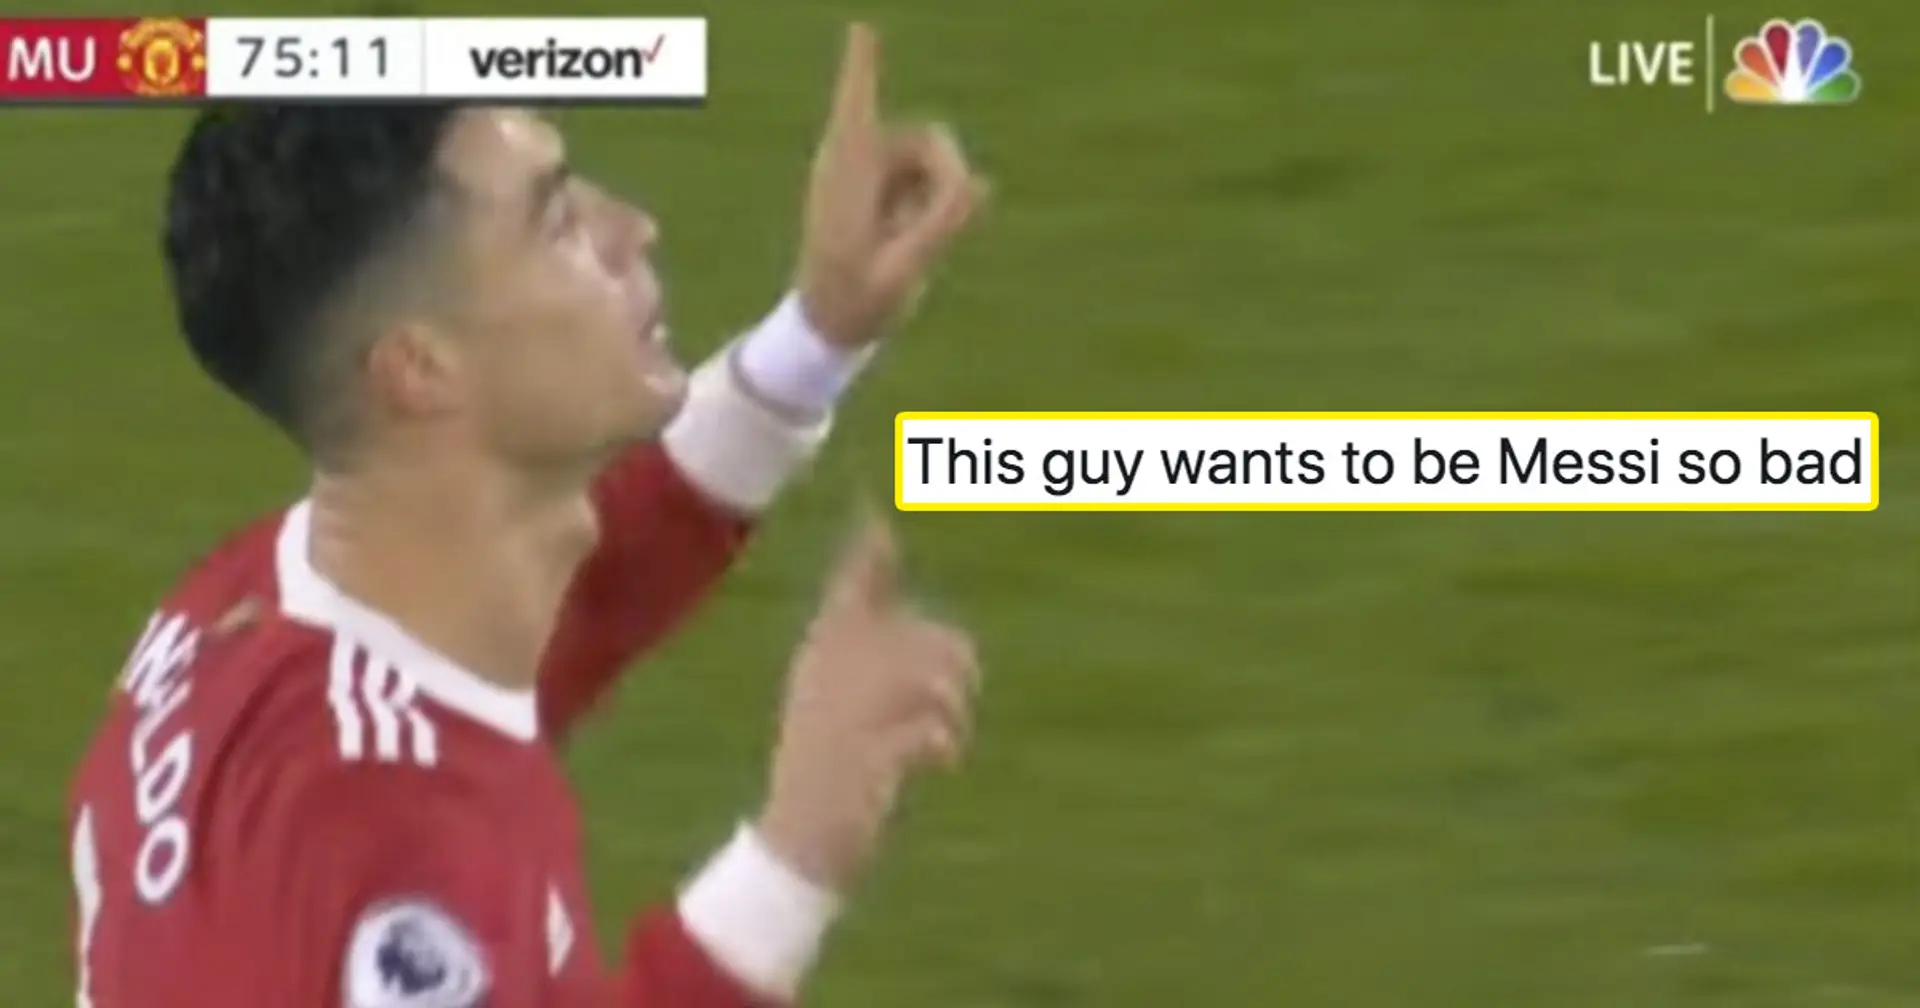 "Si copier les gestes de Messi est un art, Ronaldo est le Picasso": les fans réagissent à la nouvelle célébration du but de Cristiano